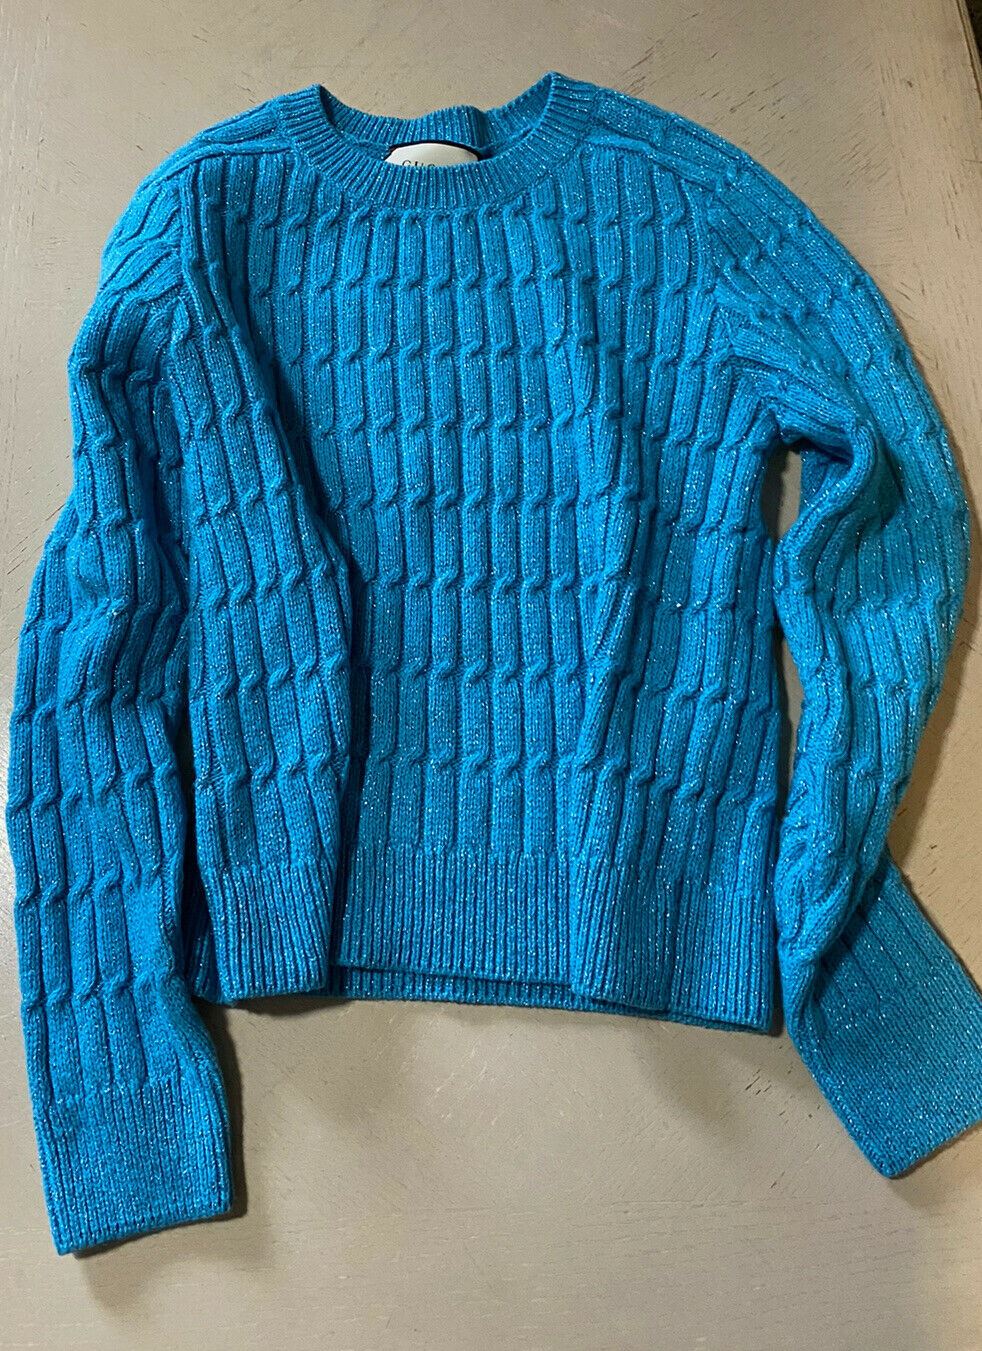 NWT $1400 Gucci Мужской свитер с круглым вырезом из шерсти и кашемира лазурный (синий) M Италия